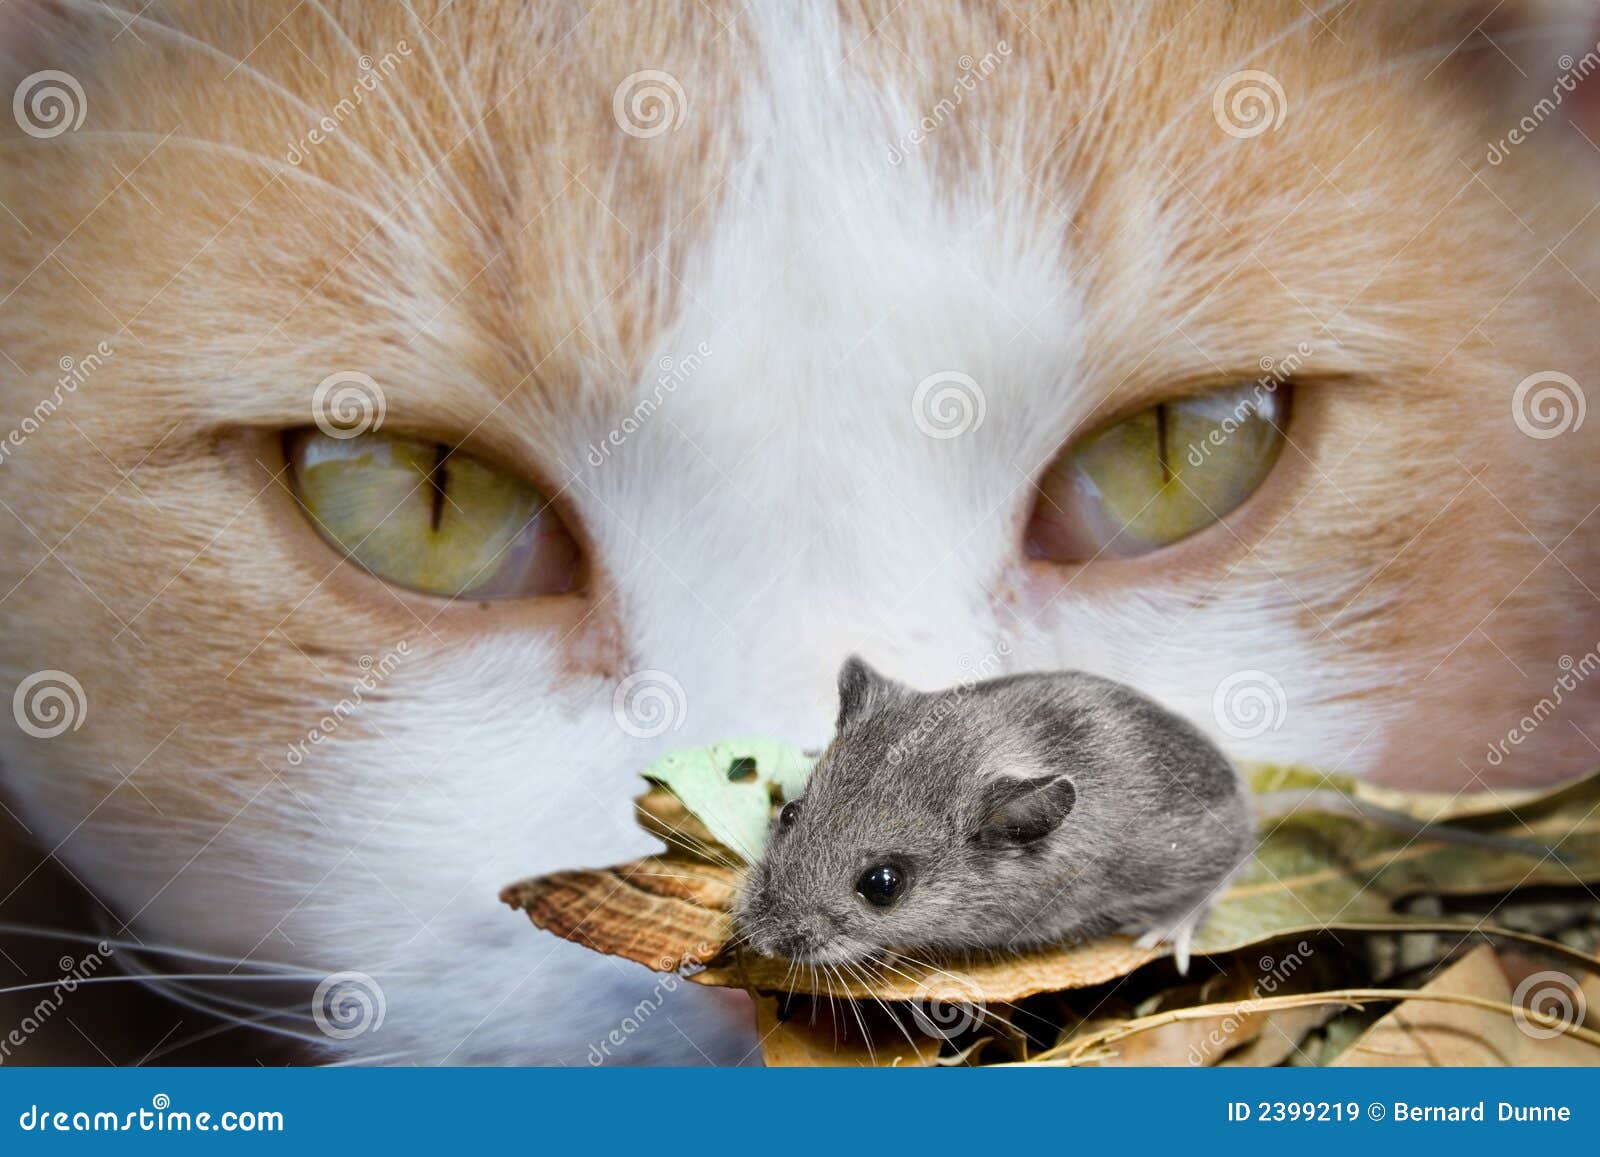 van de kat muis stock afbeelding. of verleiding - 2399219